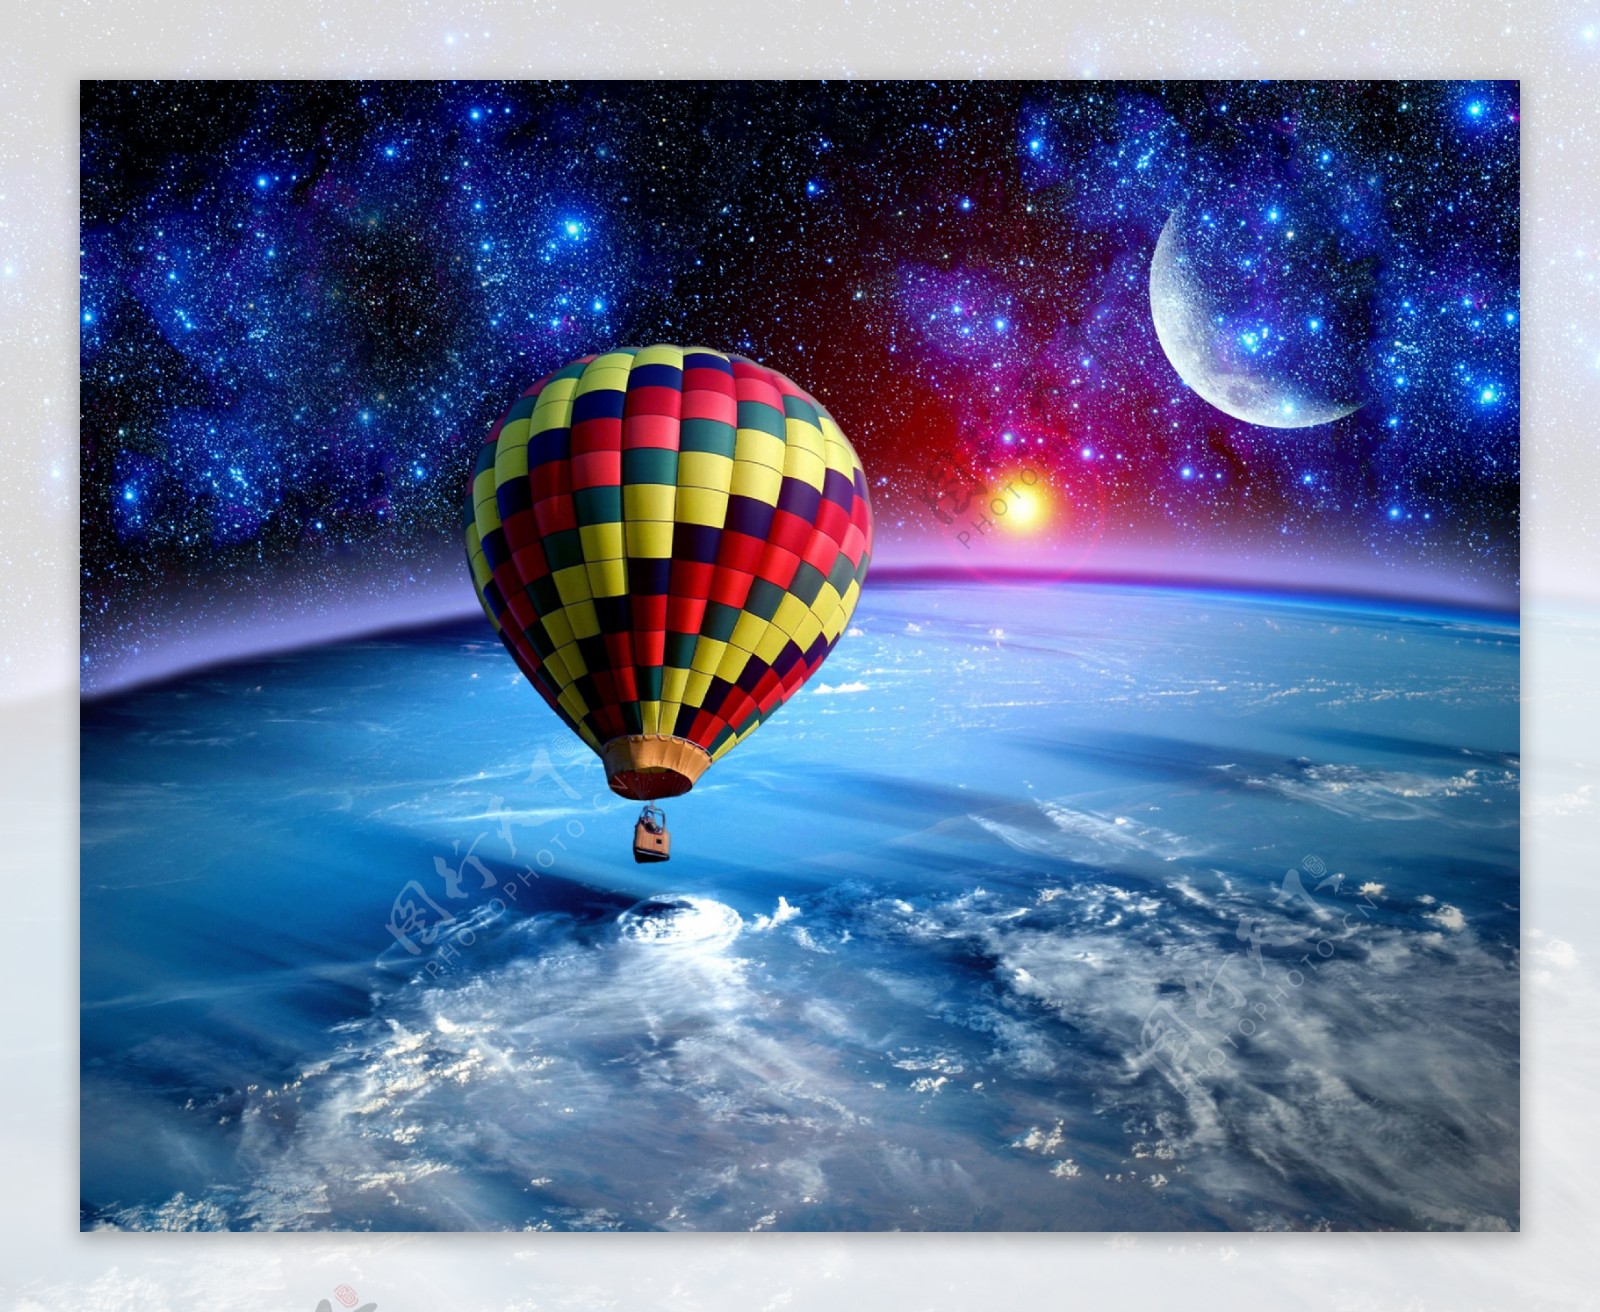 太空中的热气球图片